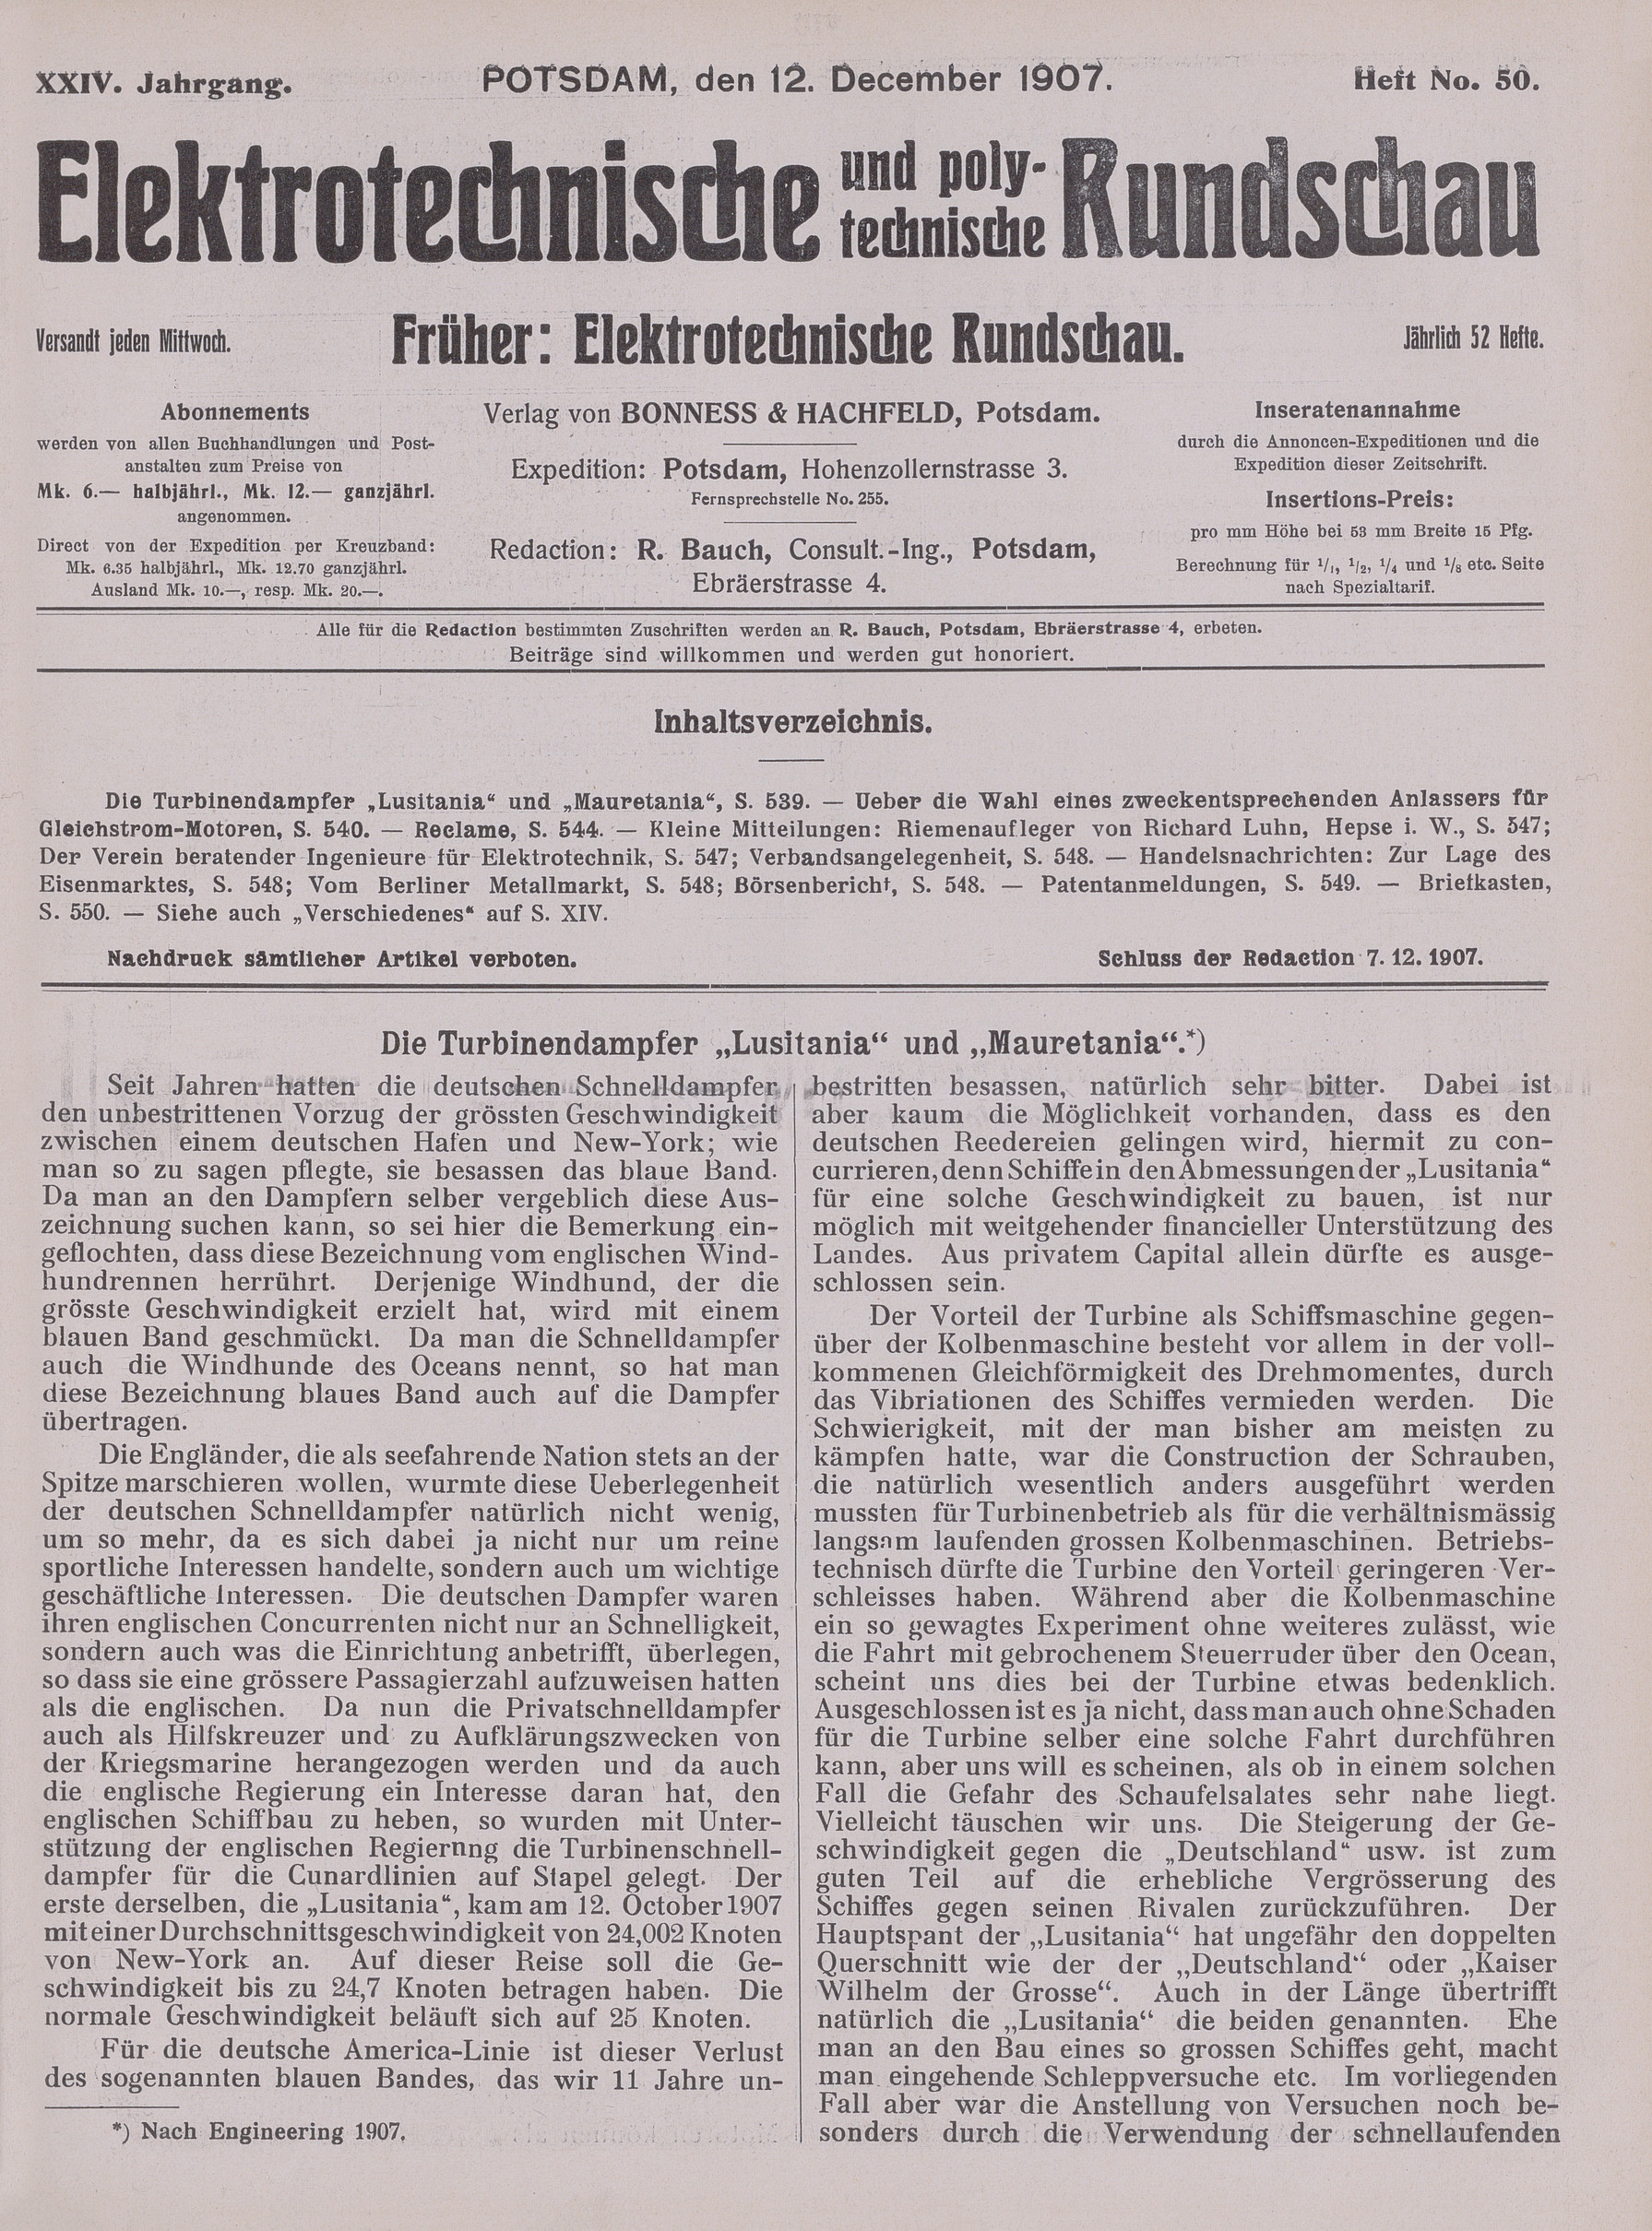 Elektrotechnische und polytechnische Rundschau, XXIV. Jahrgang, Heft No. 50